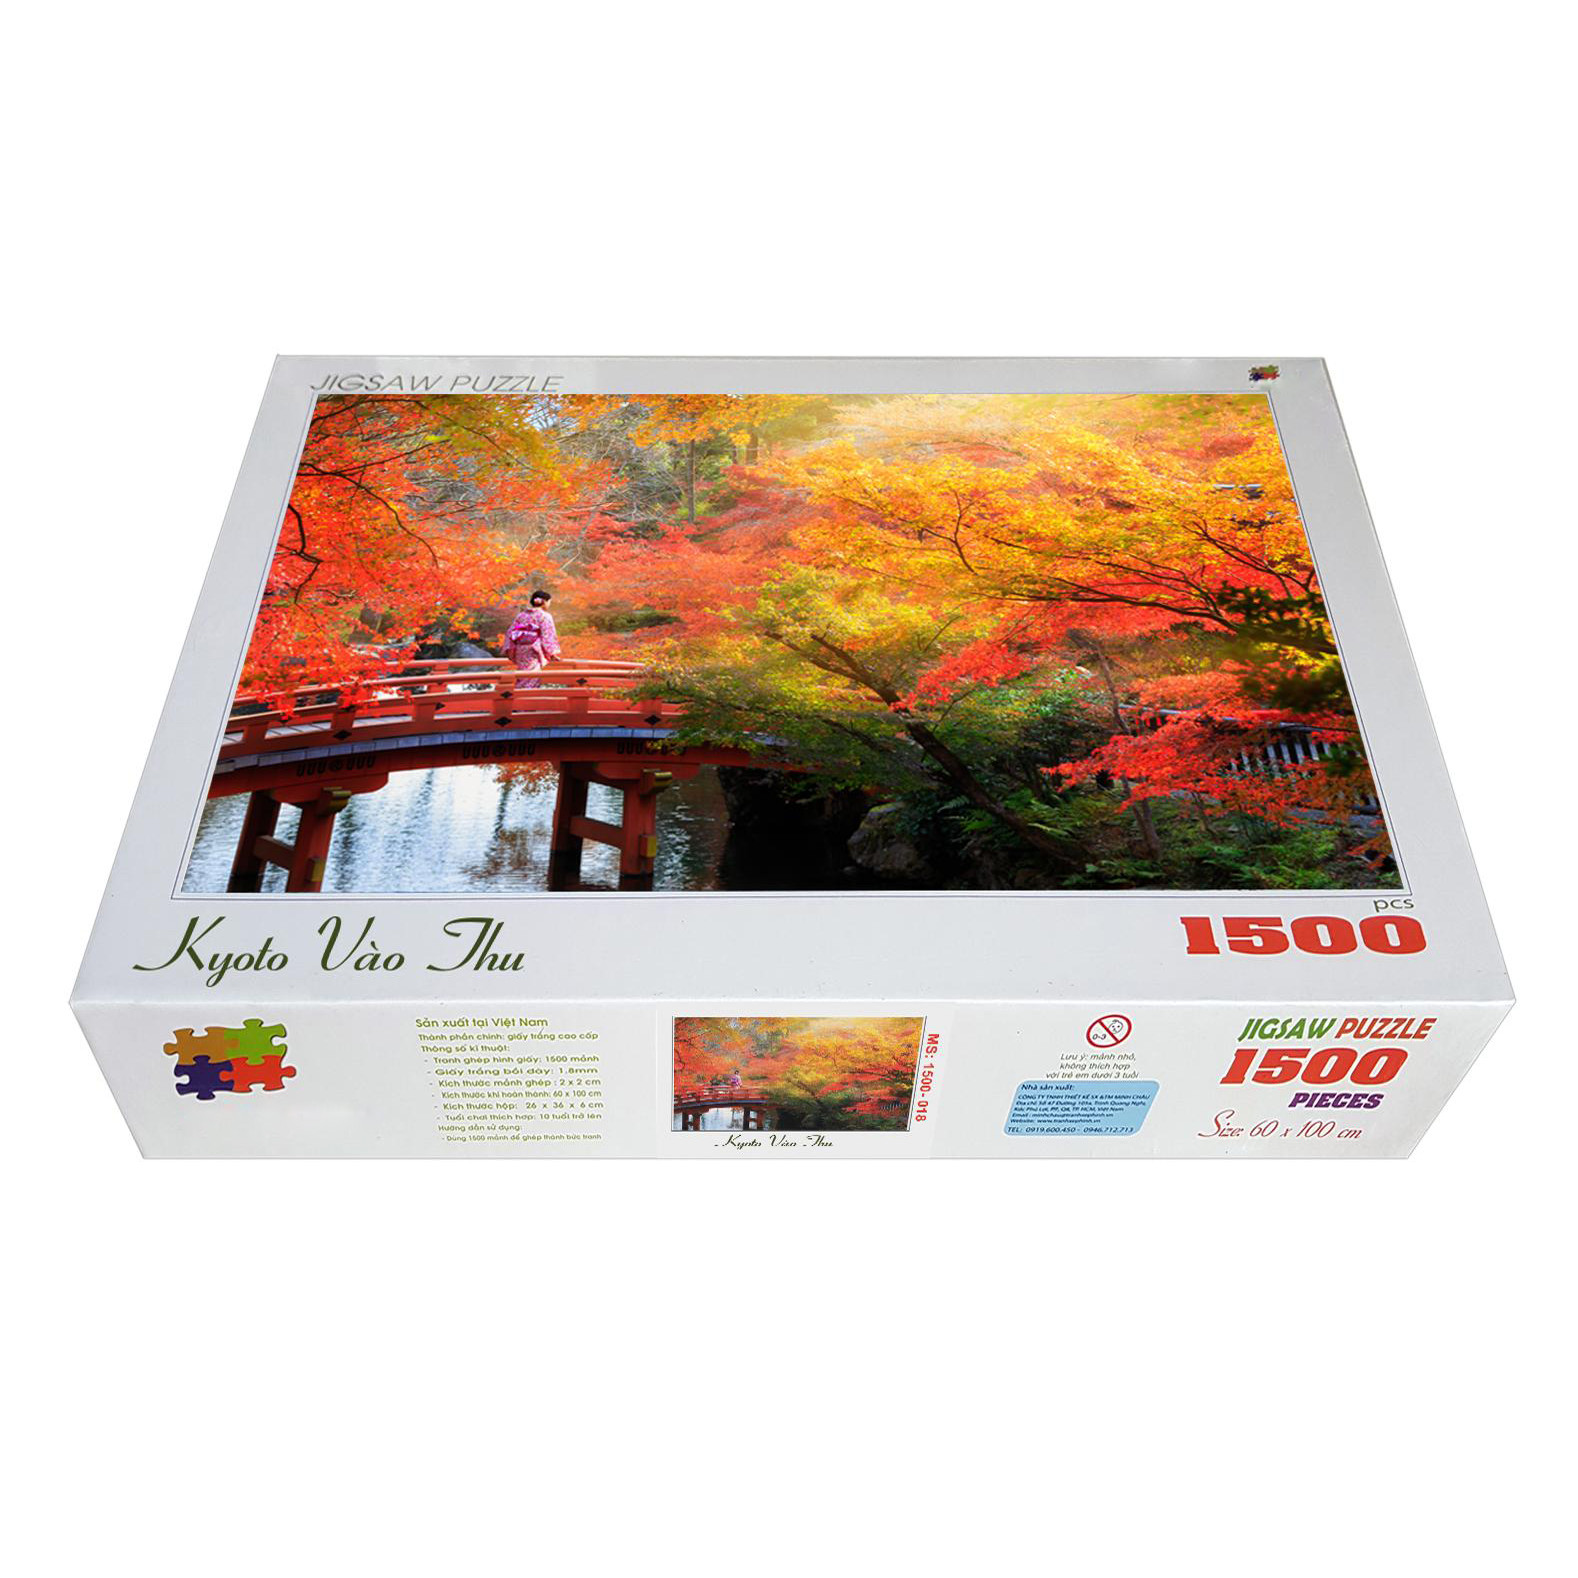 Bộ tranh xếp hình jigsaw puzzle cao cấp 1500 mảnh – Kyoto Vào Thu (60x100cm)